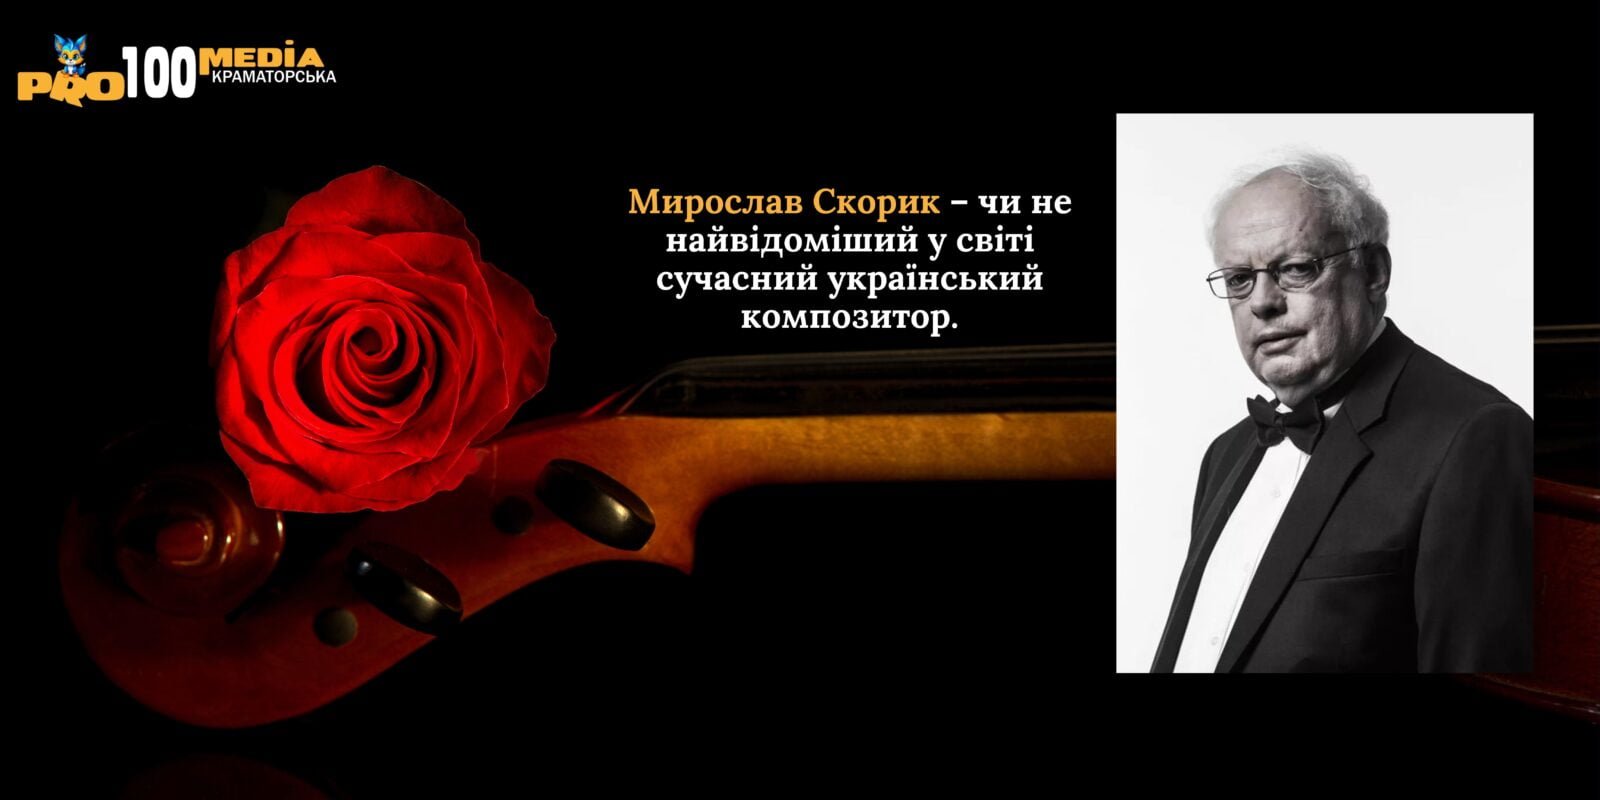 Мирослав Скорик – чи не найвідоміший у світі сучасний український композитор.